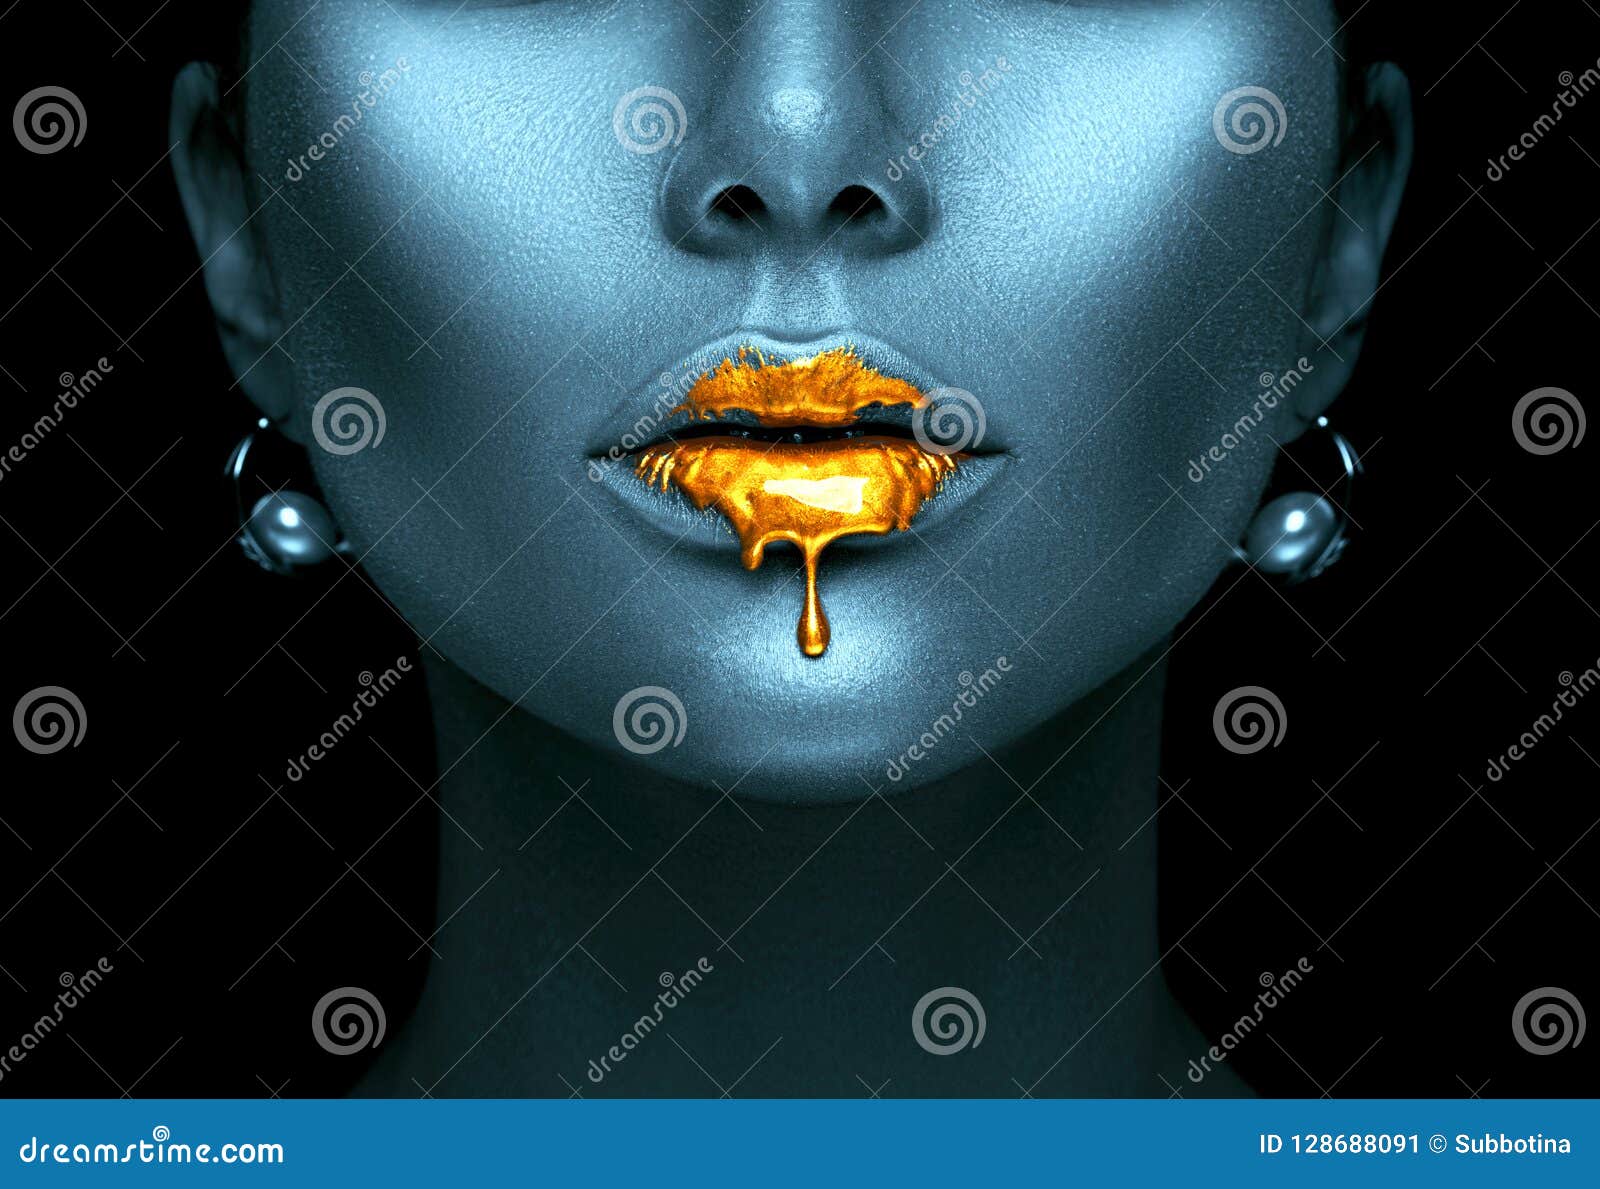 La pintura del oro gotea de los labios atractivos, descensos líquidos de oro en boca modelo hermosa del ` s de la muchacha, maqui